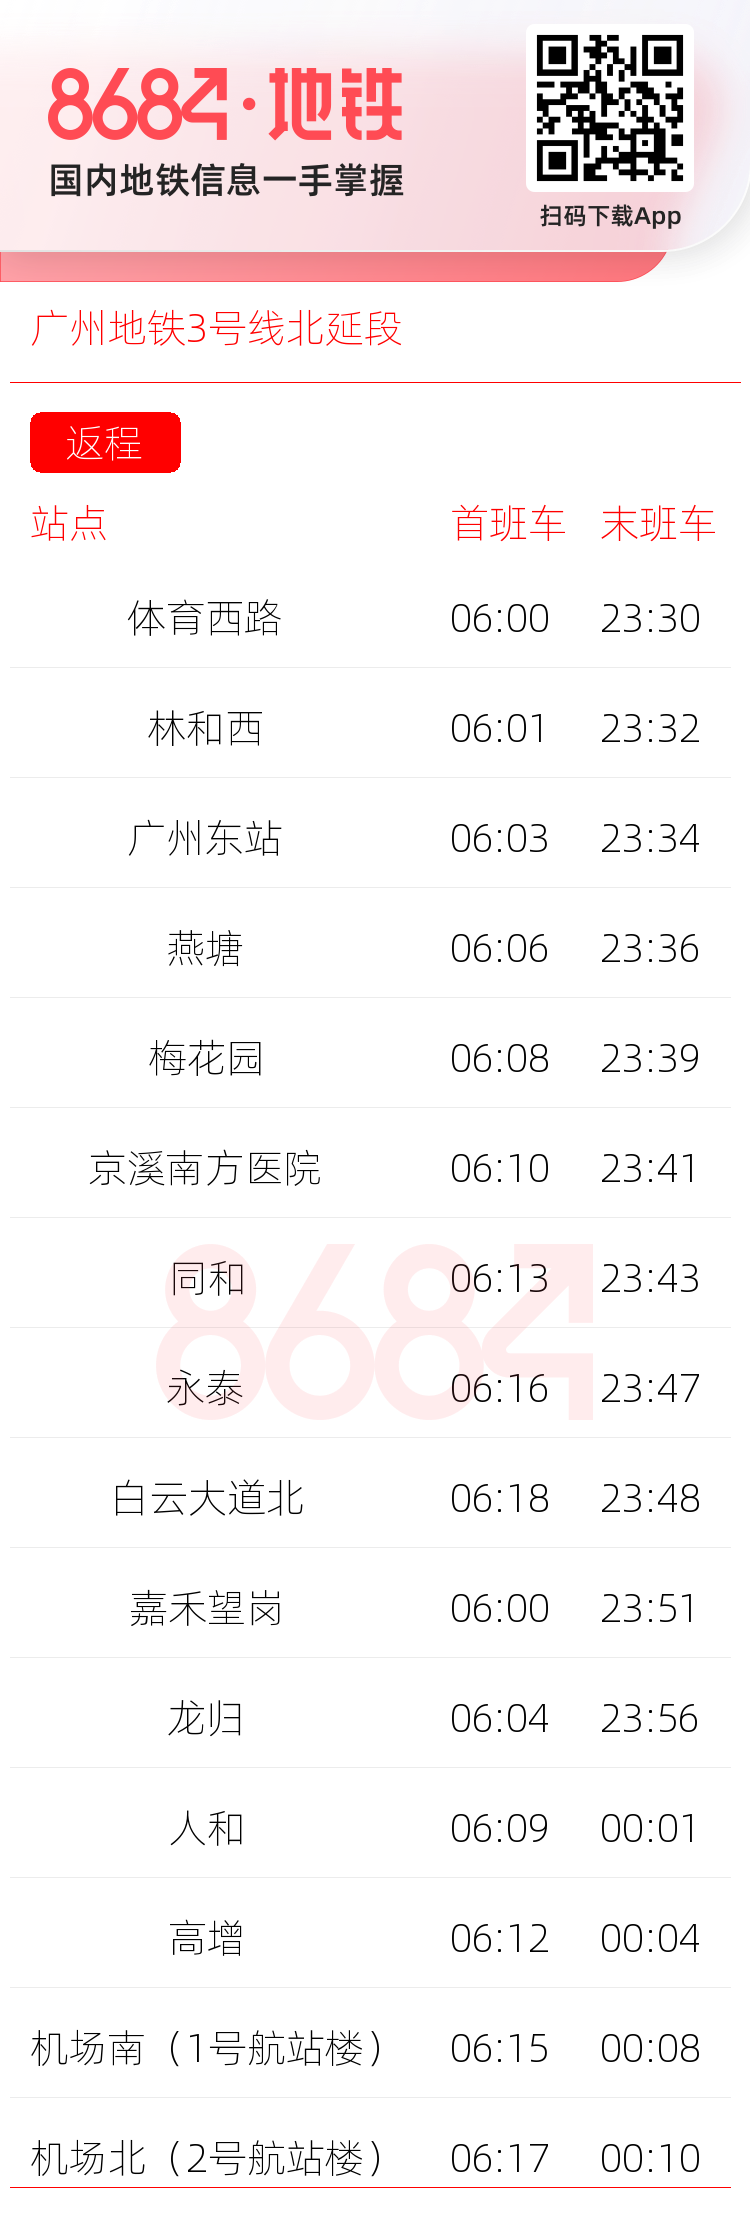 广州地铁3号线北延段运营时间表